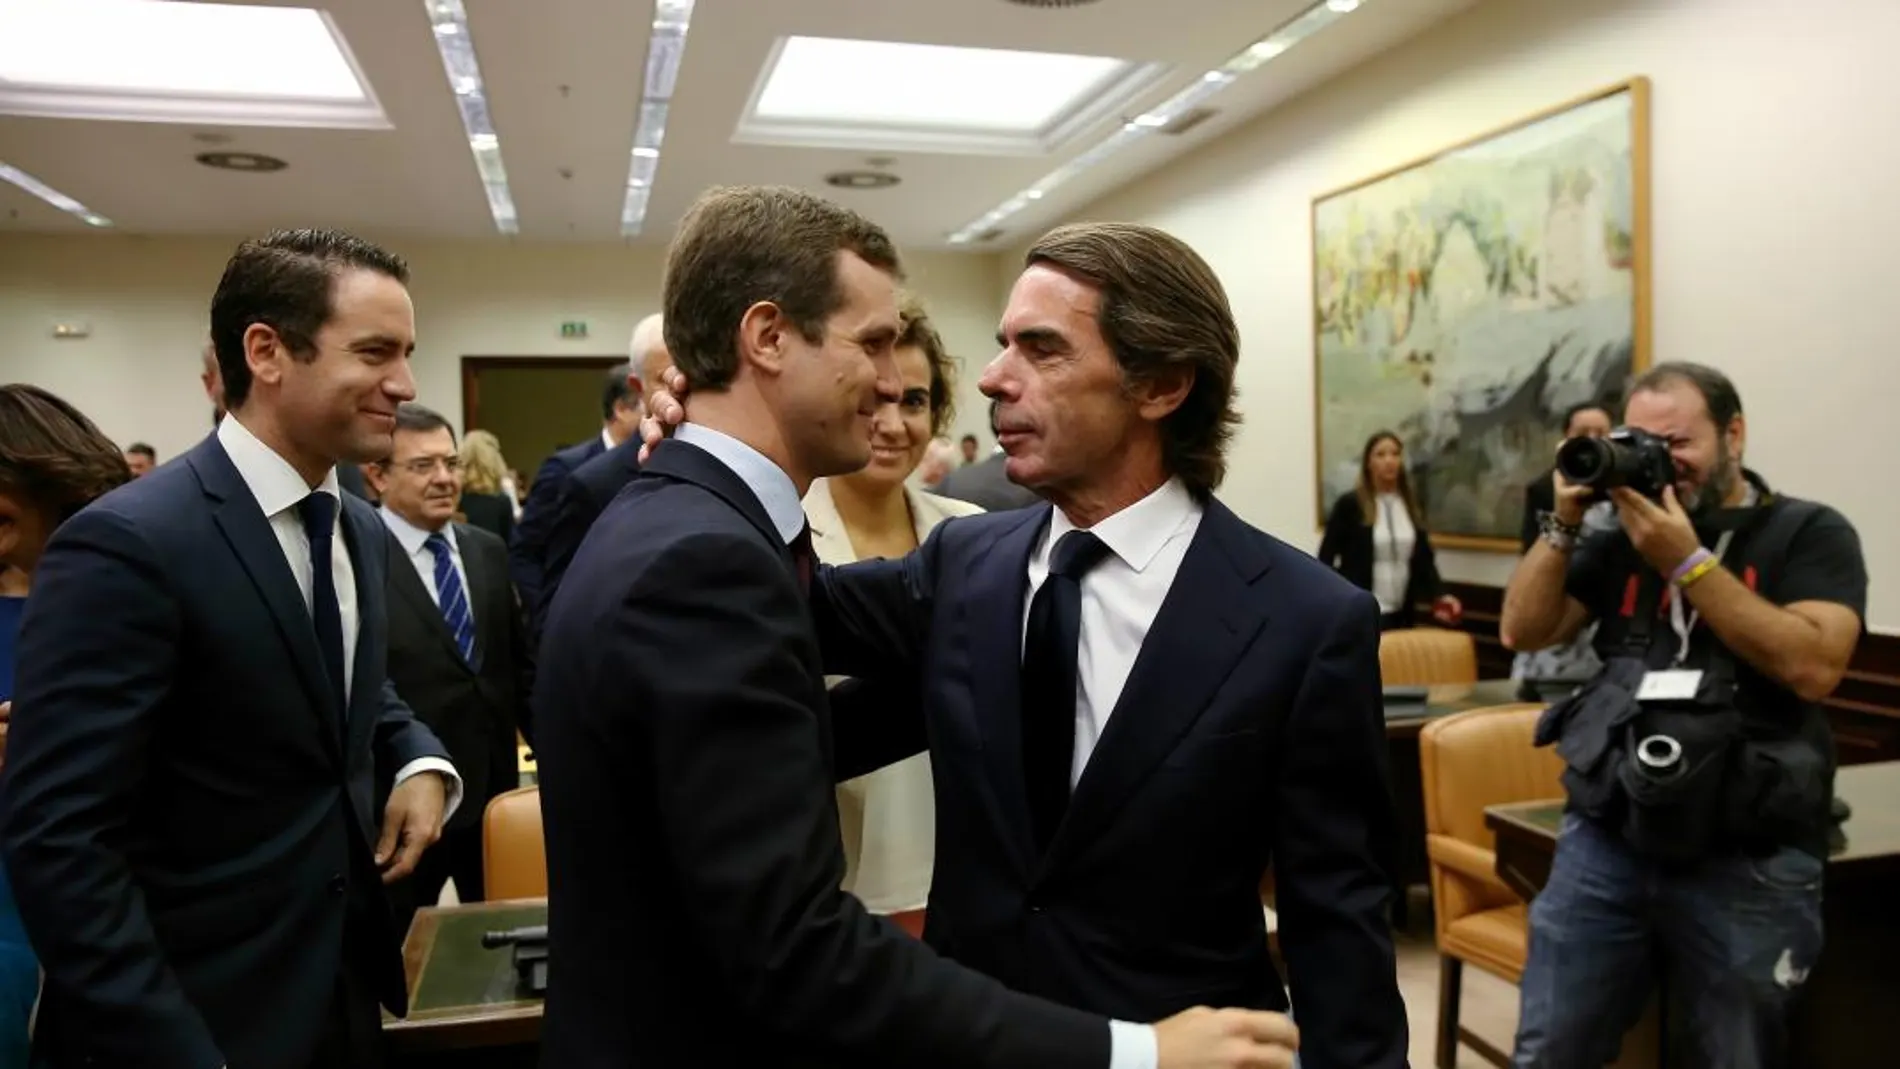 La llegada de Aznar al Congreso. El ex presidente acudió ayer a la comparecencia arropado por la plana mayor del PP de Casado. Foto: Cristina Bejarano